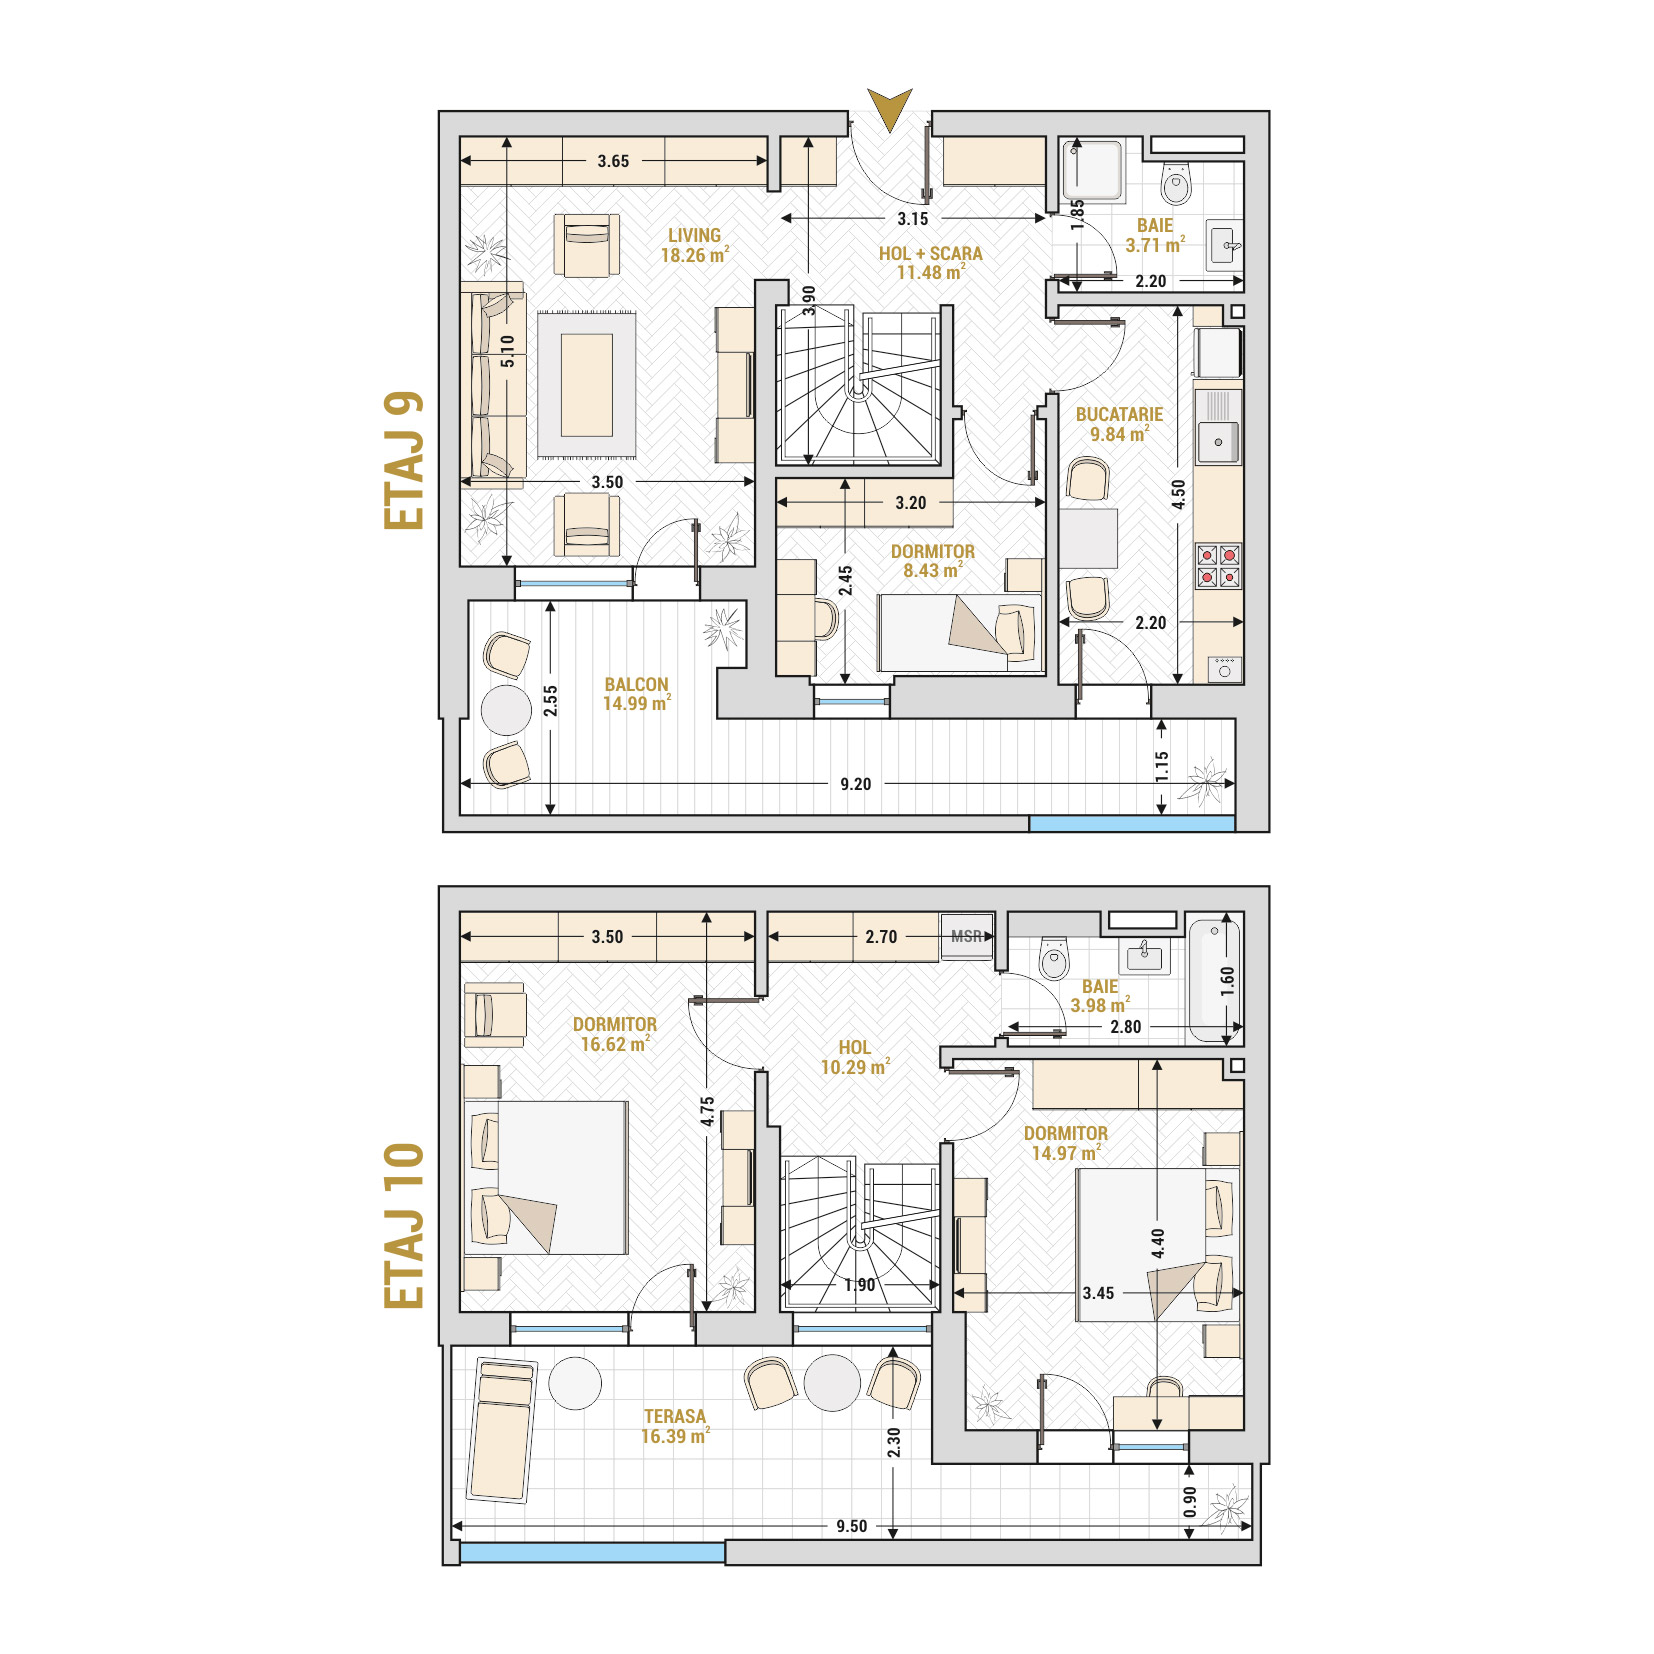 Penthouse 4 Camere Tip 3 Corp 3 - Drumul Taberei Residence - Apartamente de vanzare Bucuresti - Suprafata utila totala - 128.96 mp